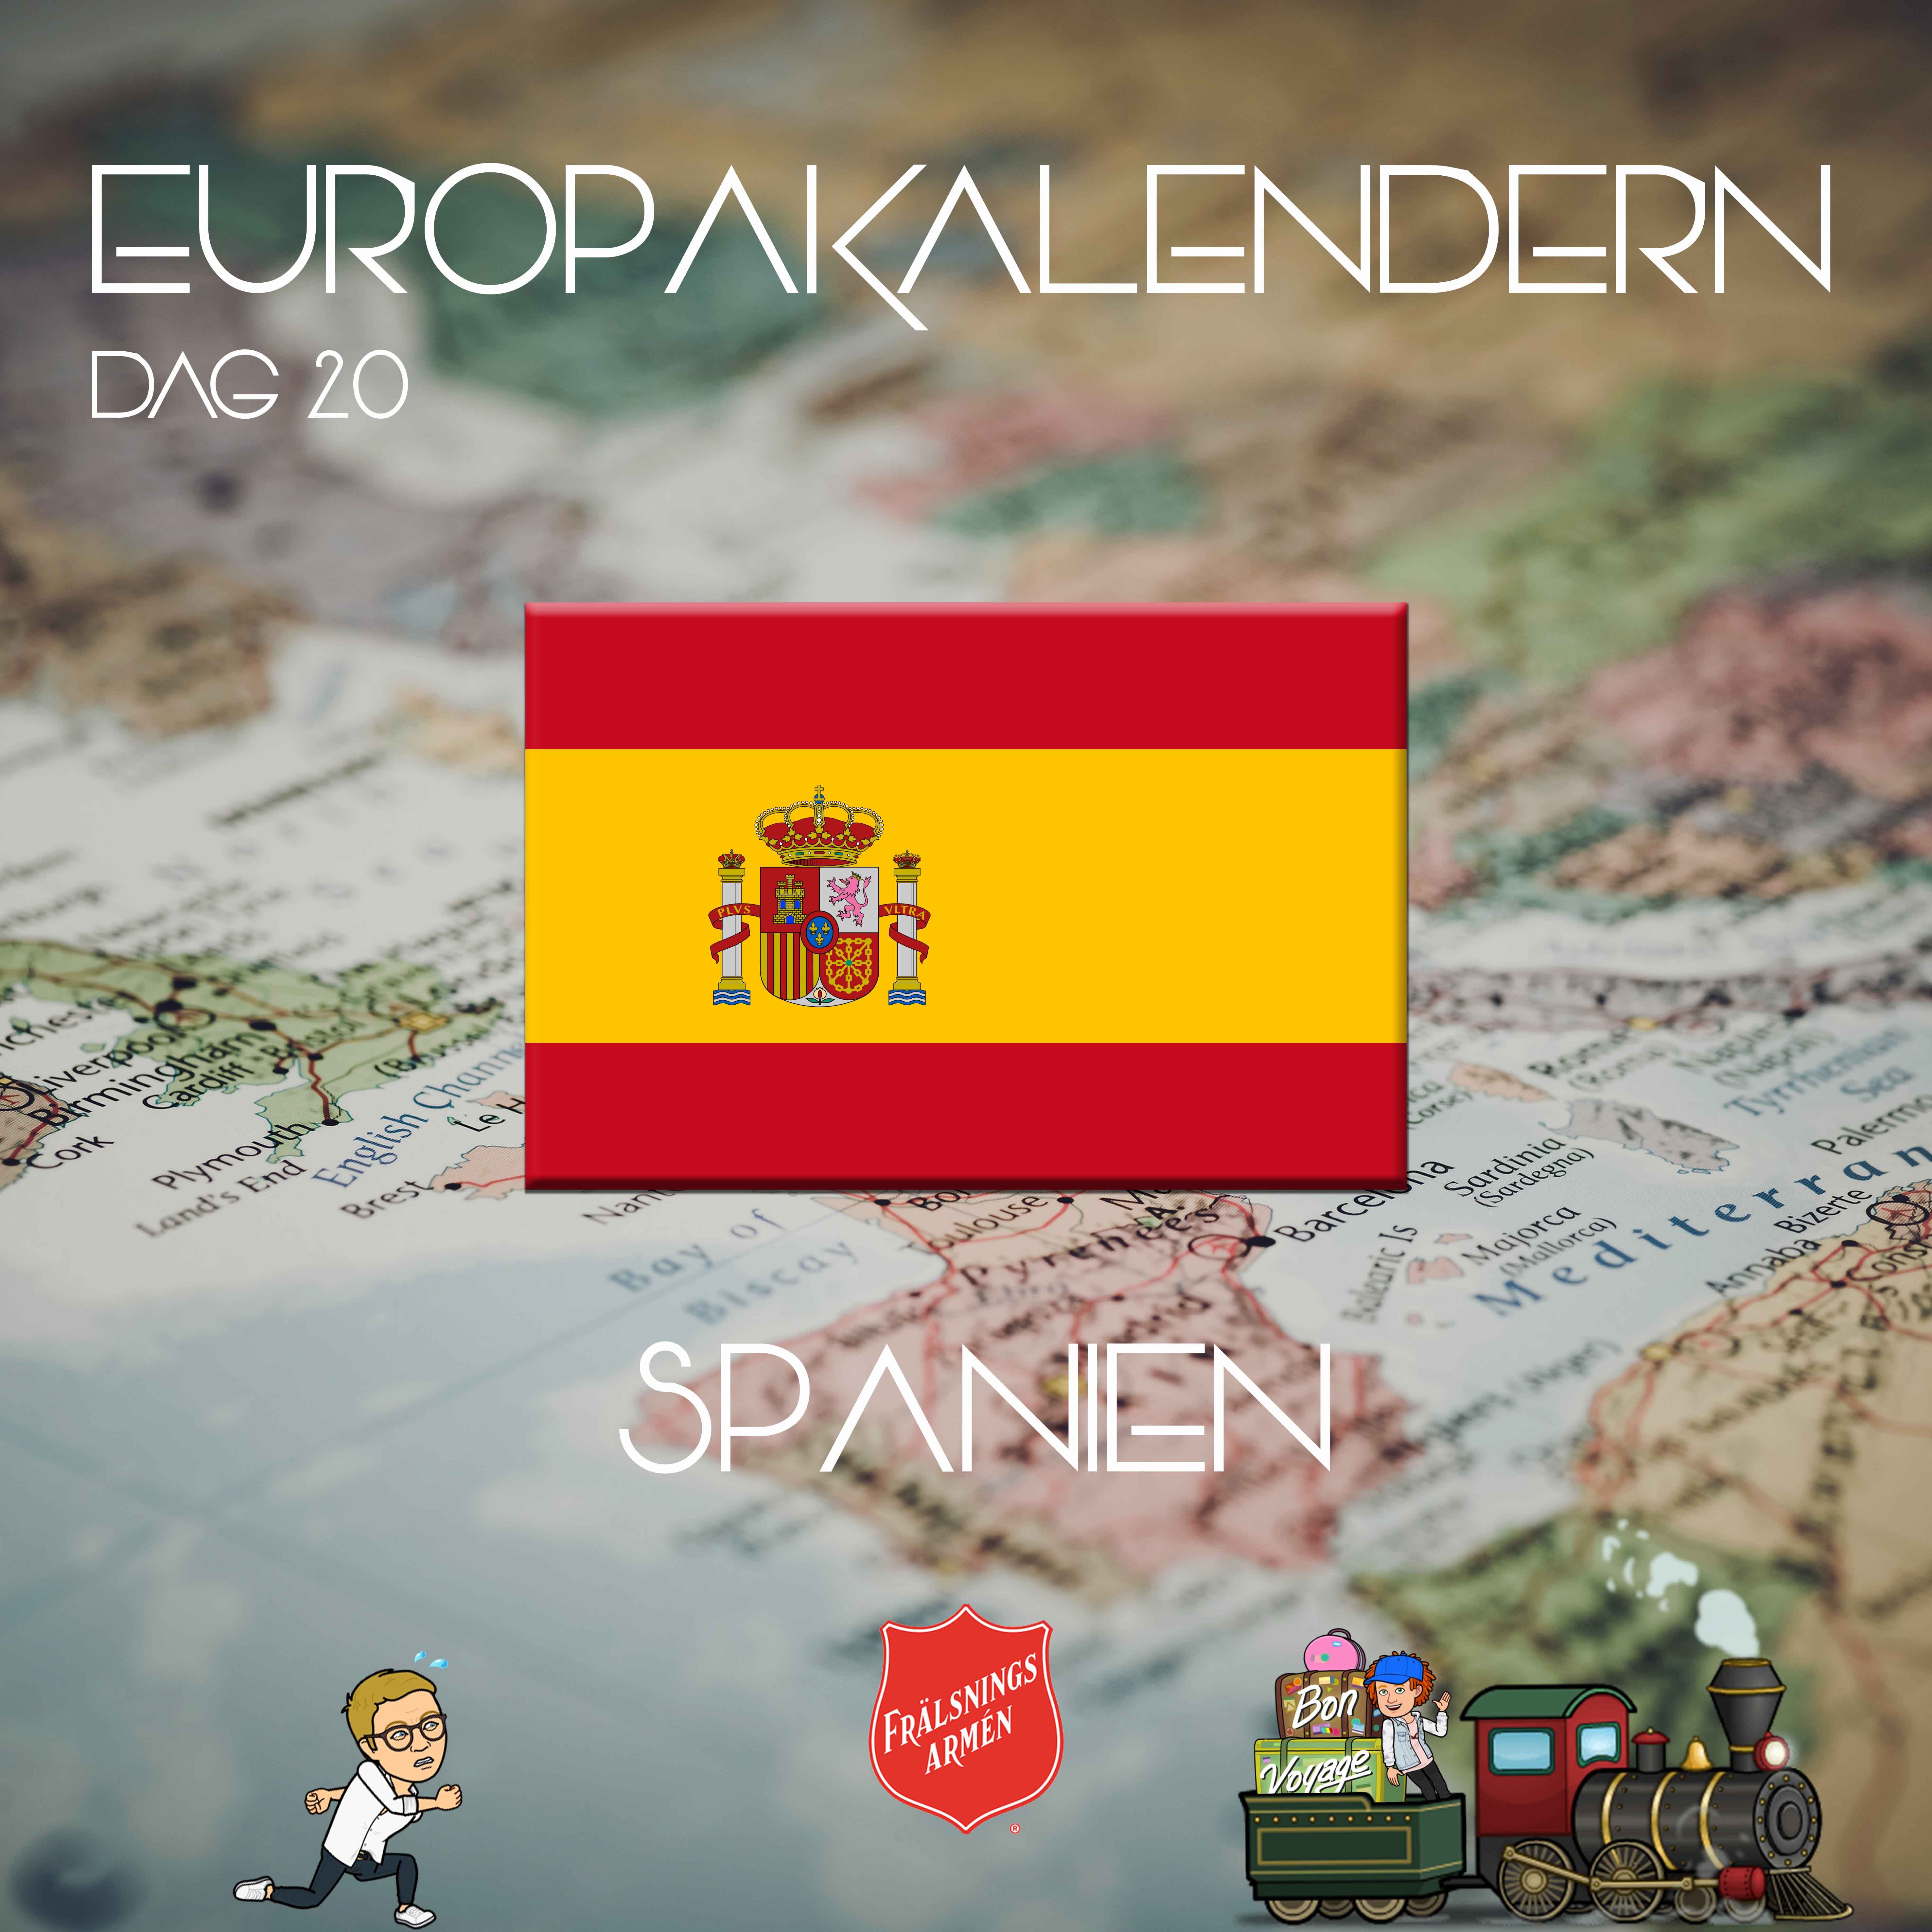 EUROPAKALENDERN DAG 20: Spanien